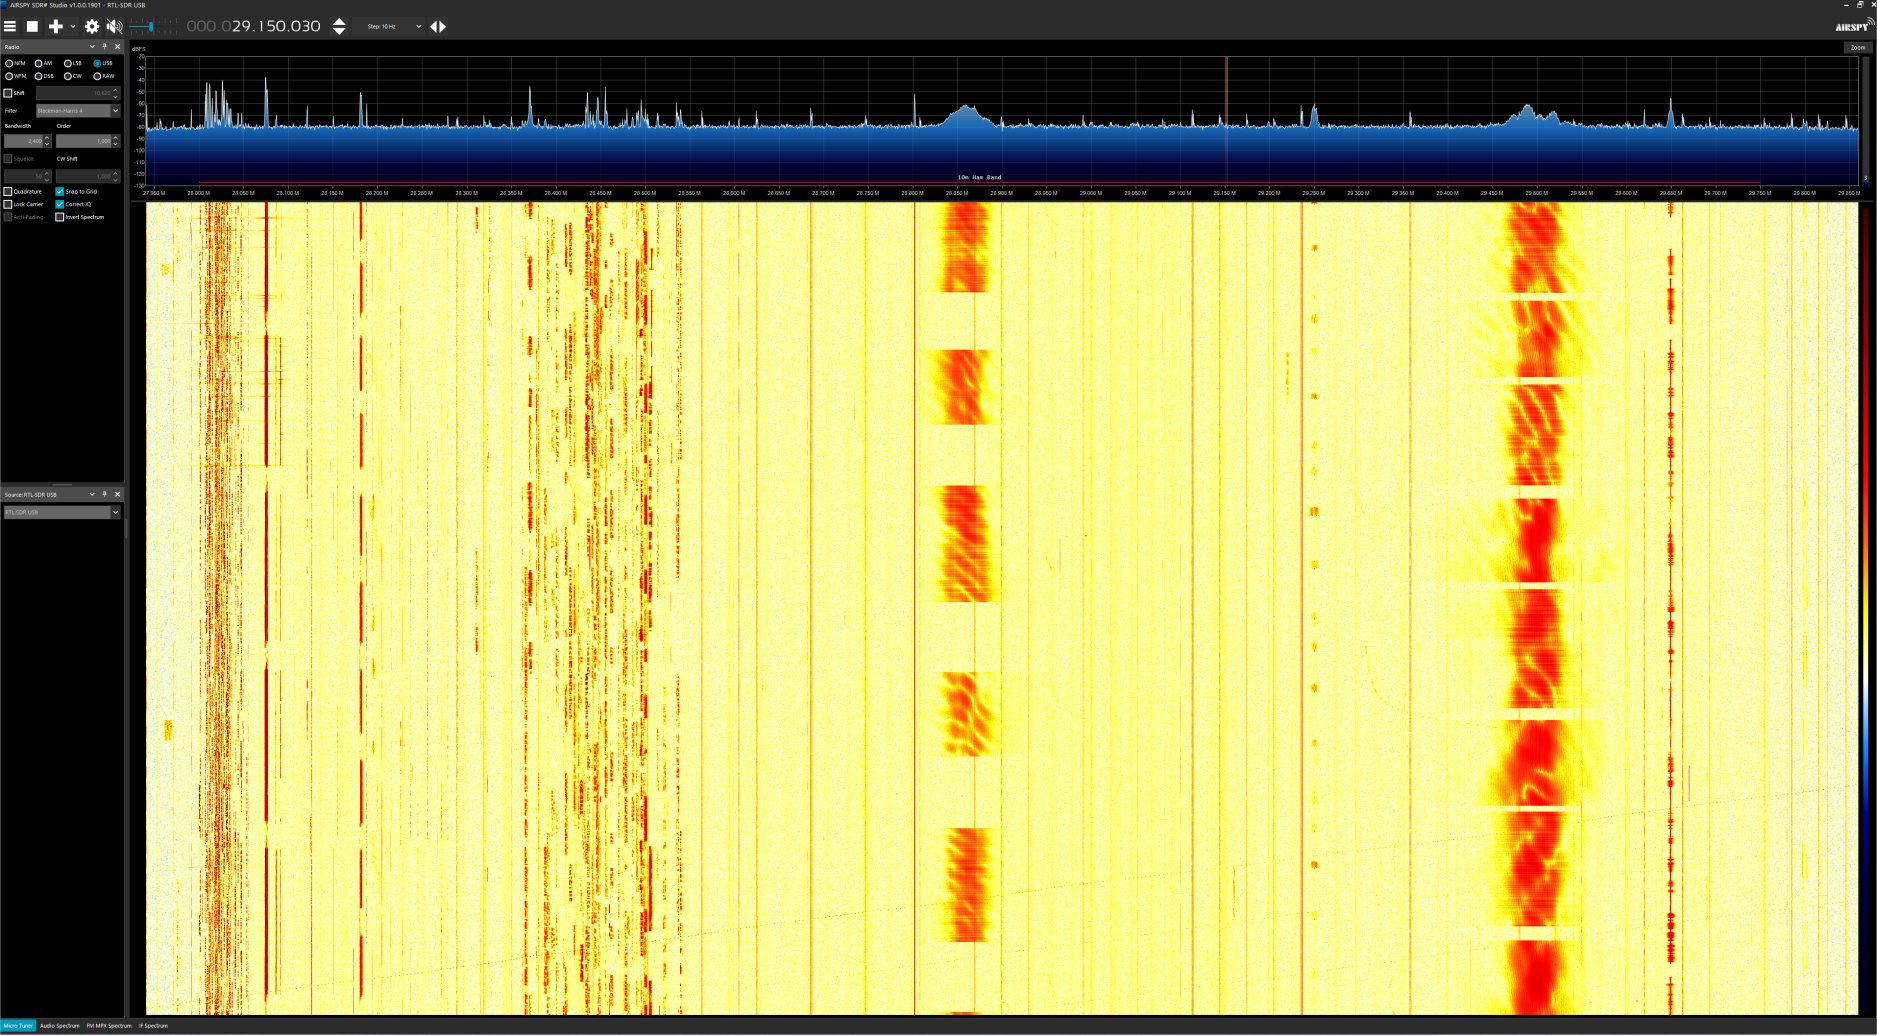 Ten meter widwband signals_7a.jpg